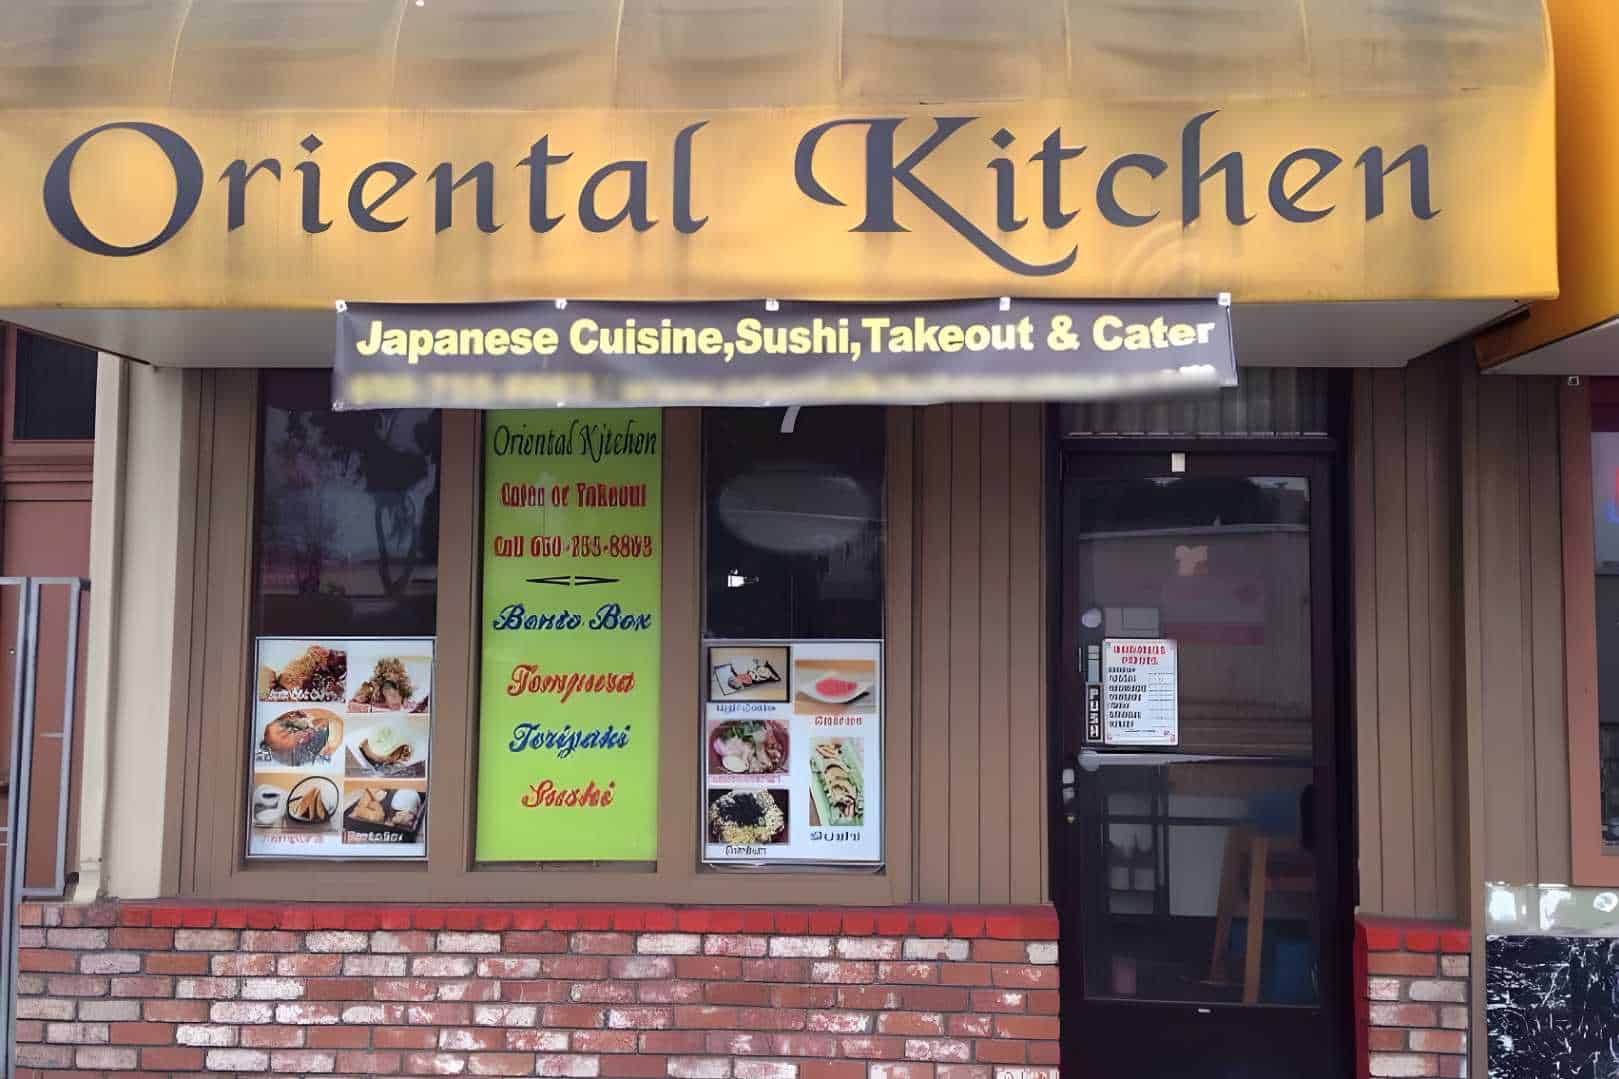 Oriental Kitchen Japanese Restaurant Best Restaurants in Daly City, CA